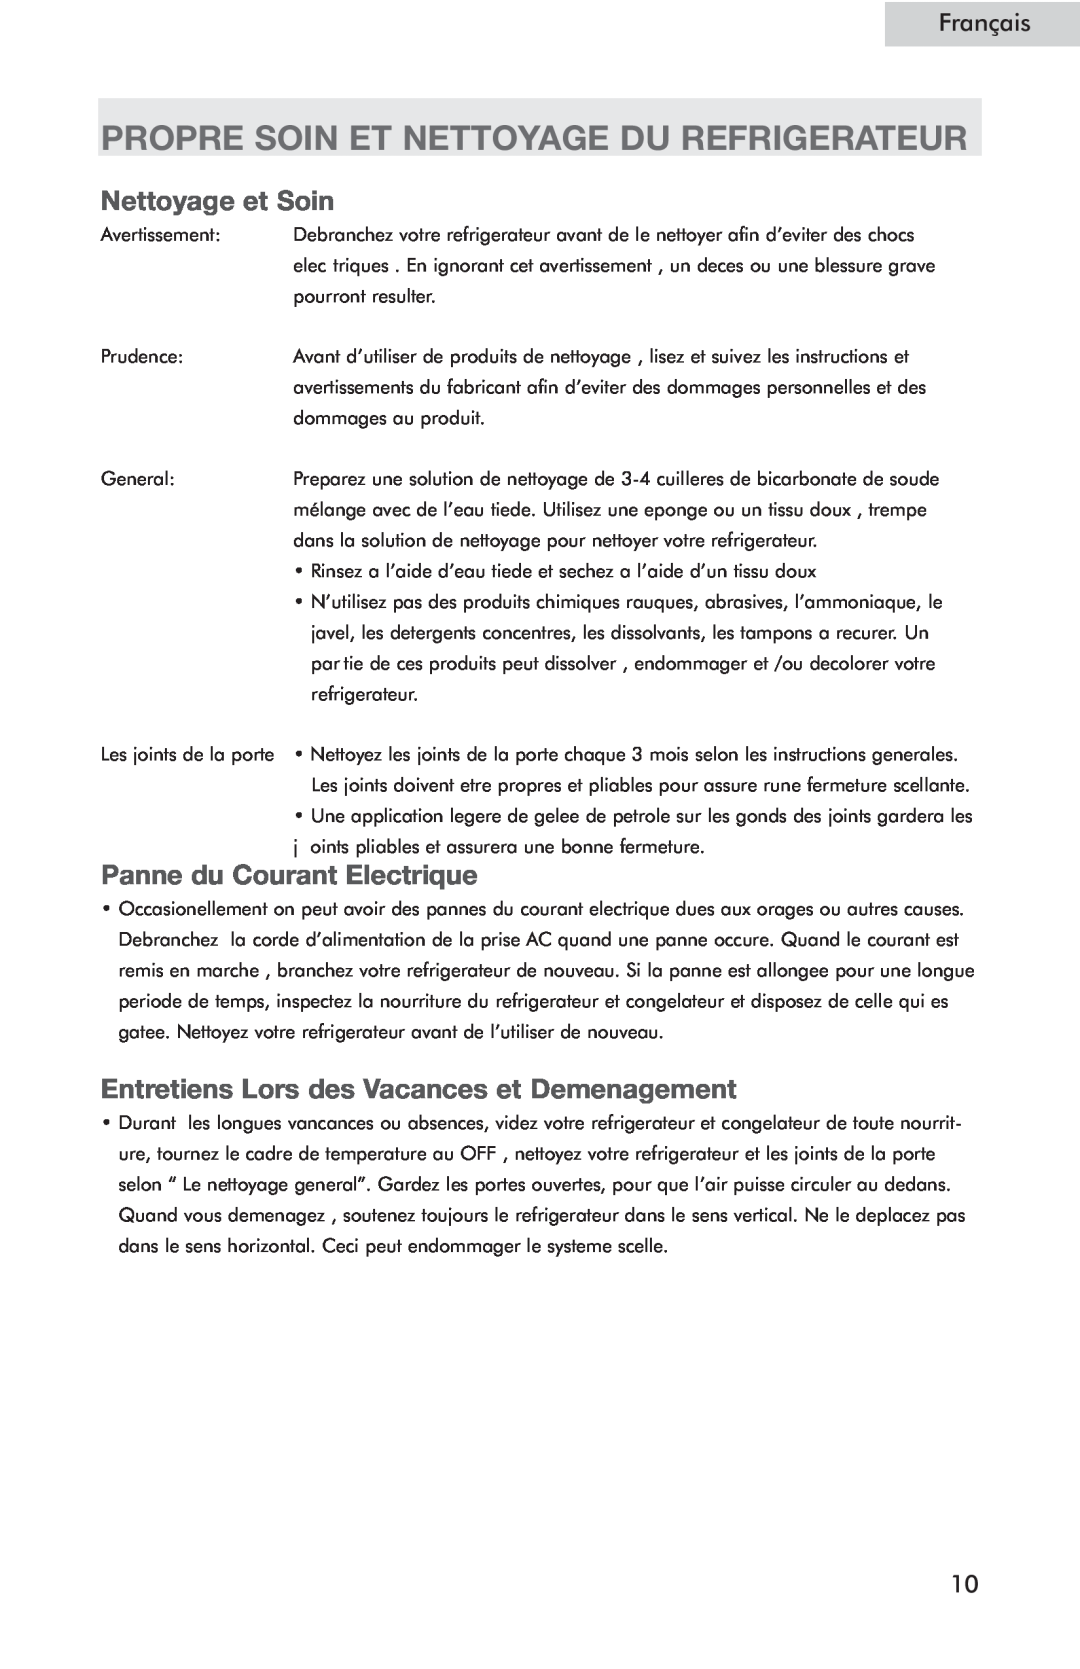 Haier HSE04WNC user manual Propre Soin Et Nettoyage Du Refrigerateur, Nettoyage et Soin, Panne du Courant Electrique 